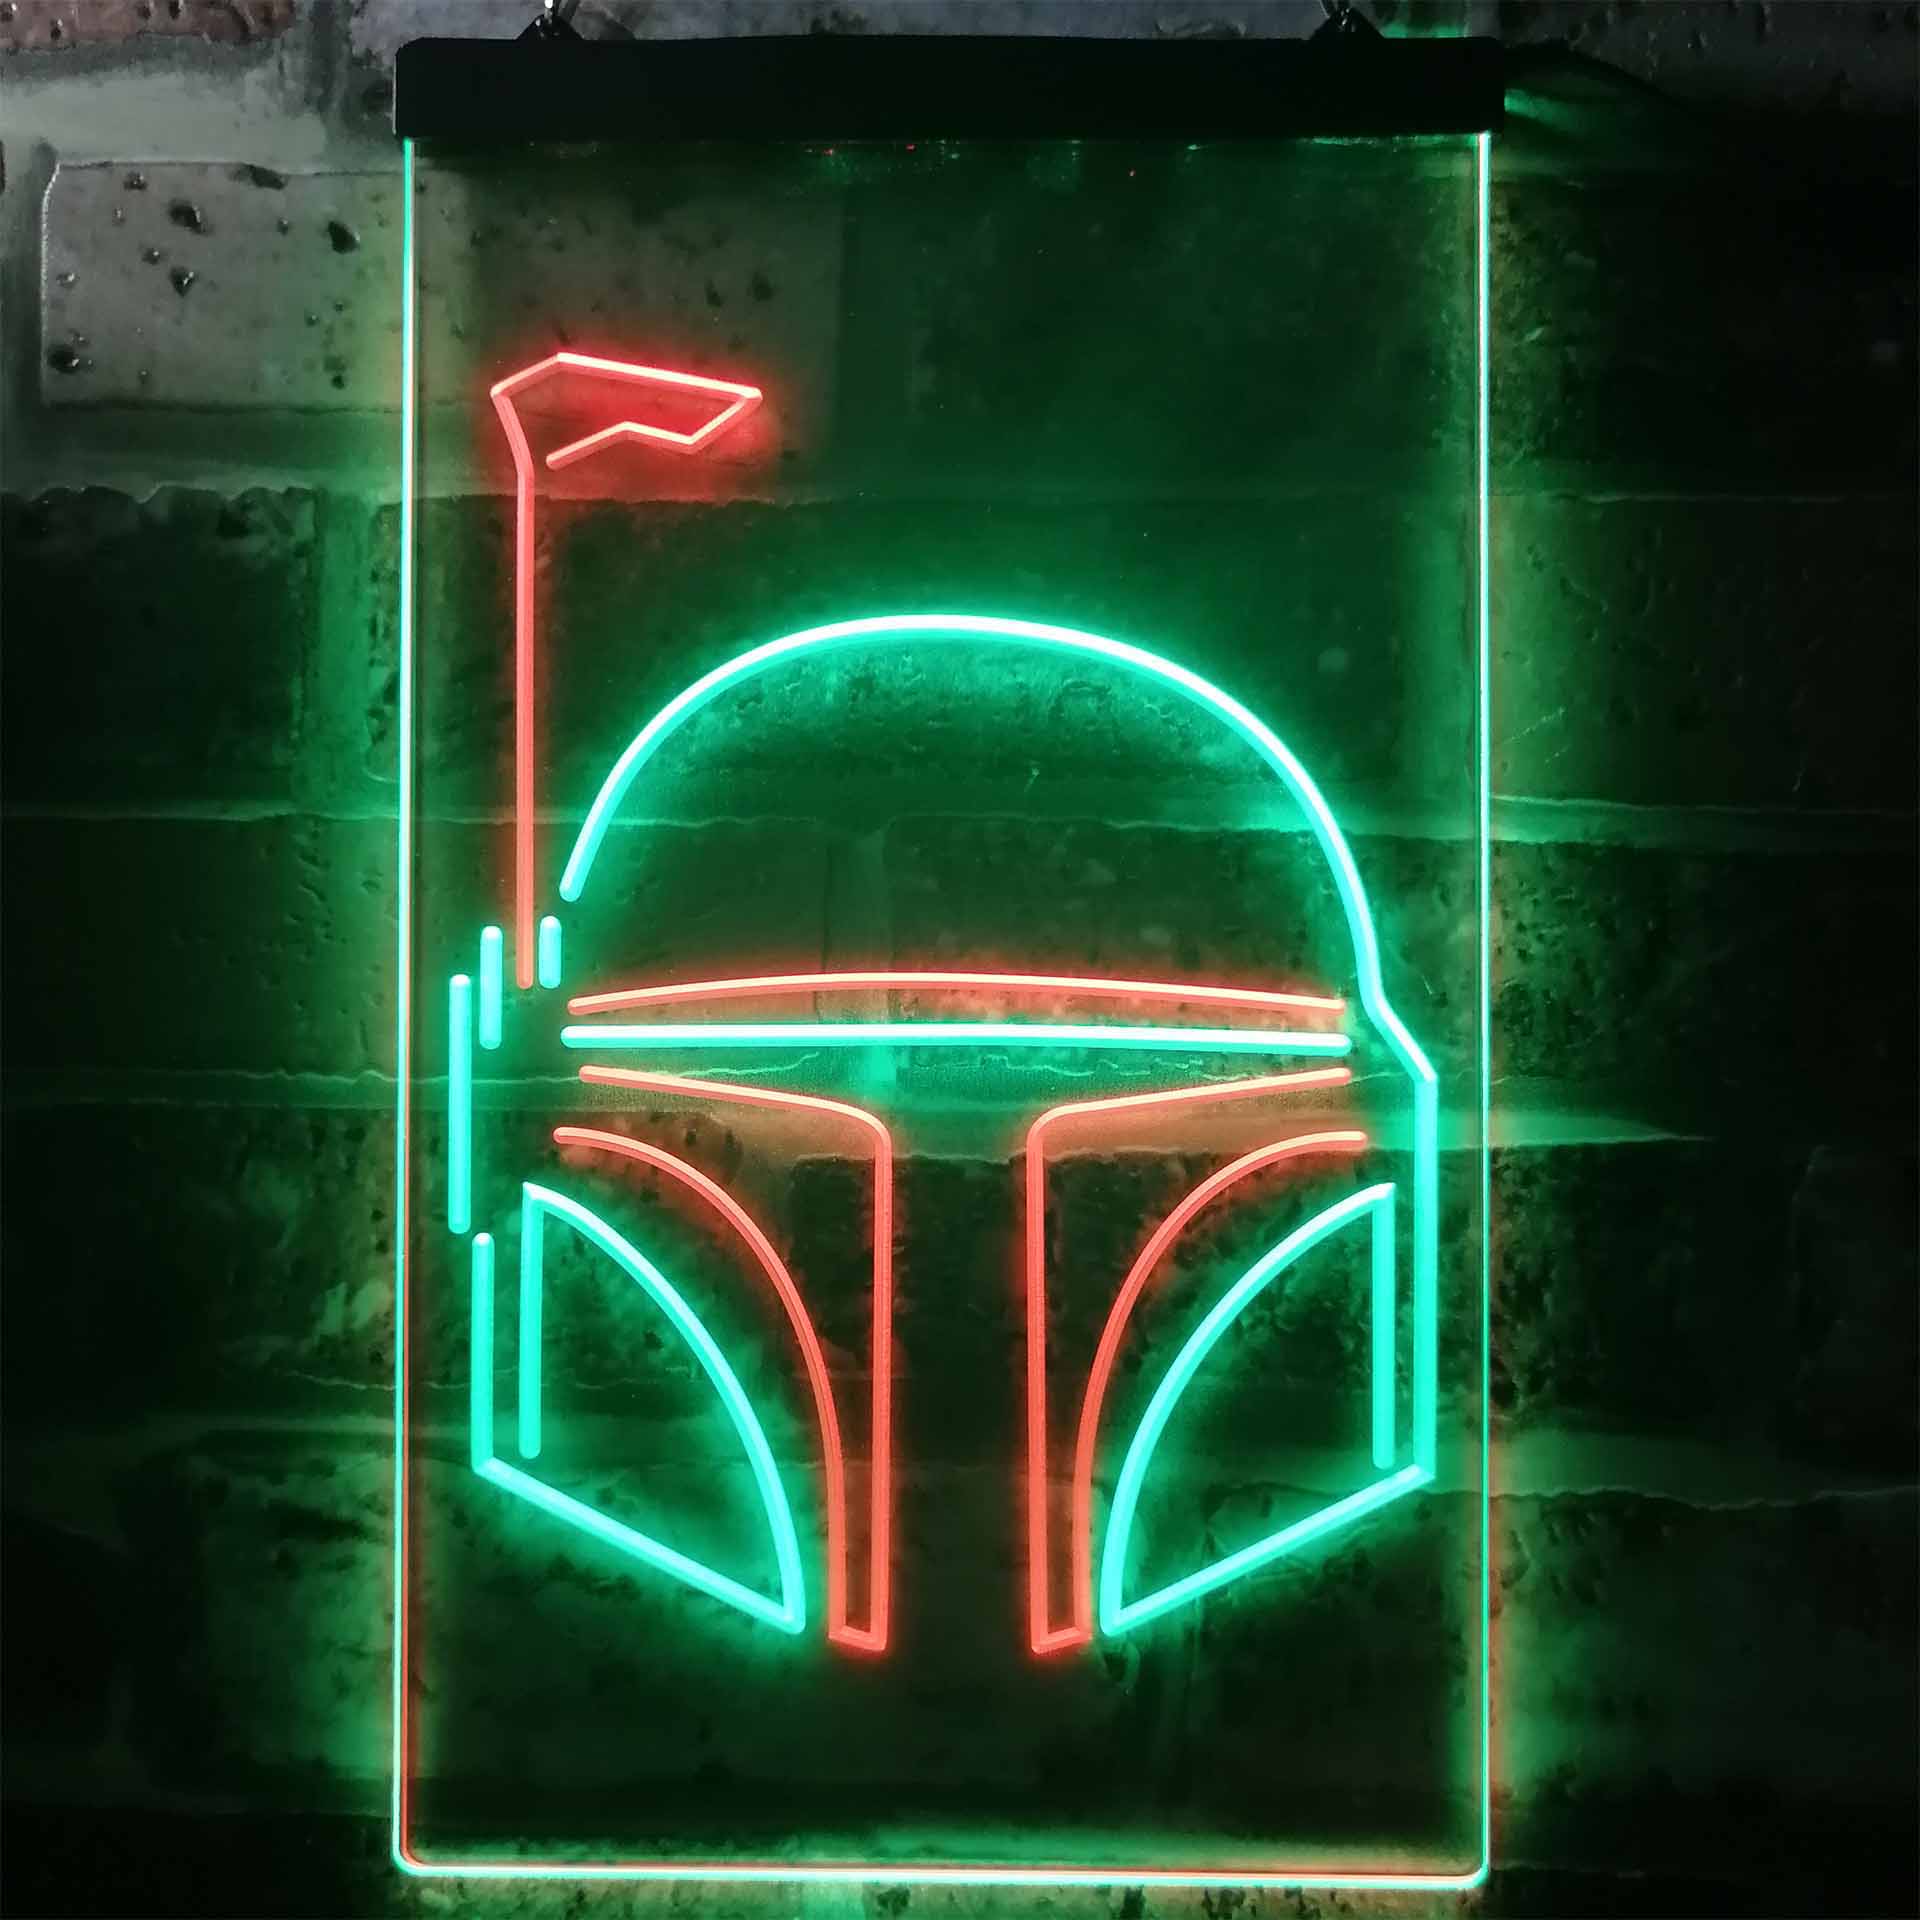 Star Wars Boba Fett Helmet Dual Color LED Neon Sign ProLedSign